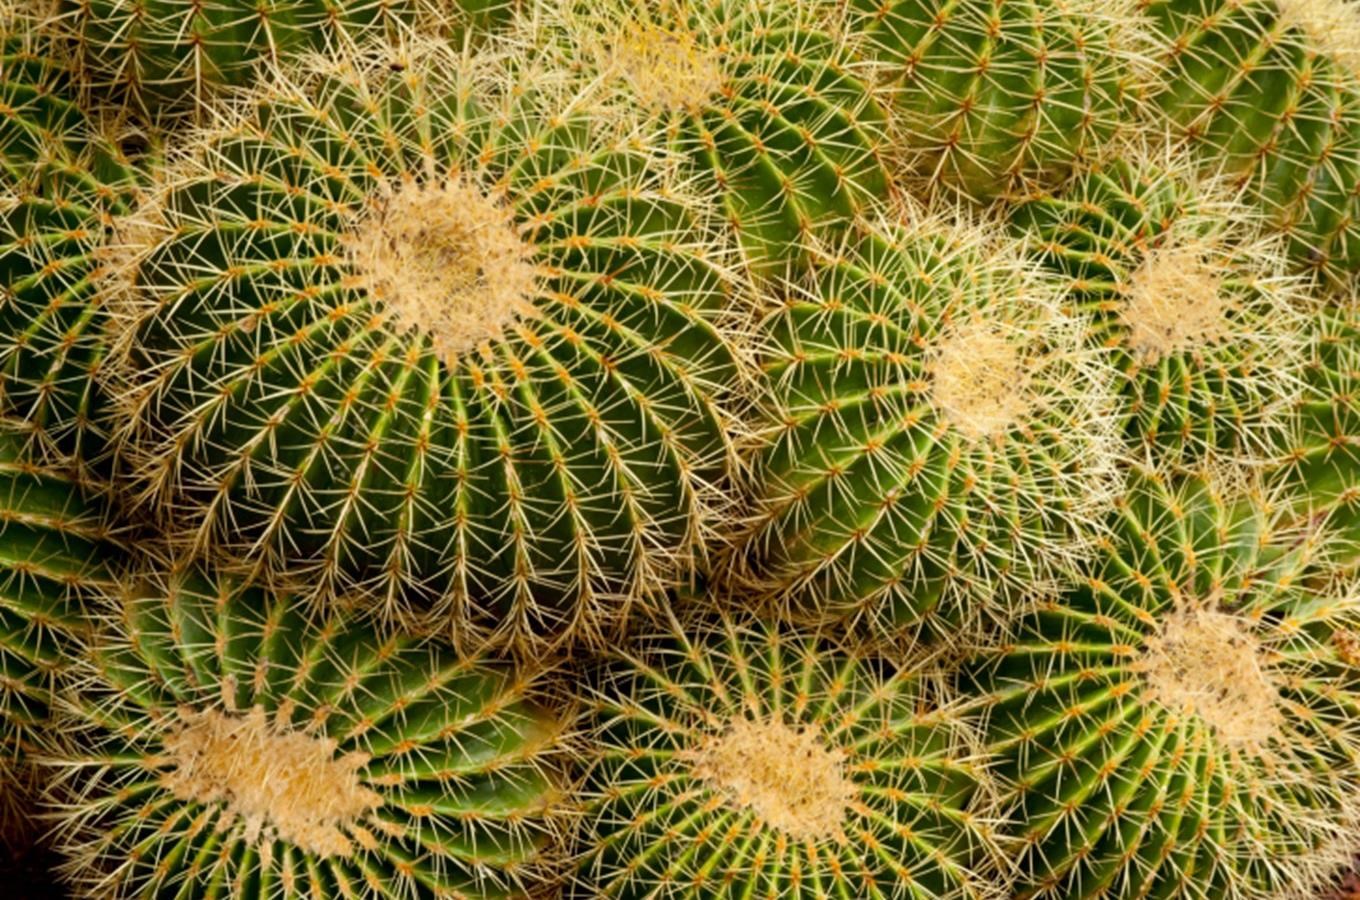 Výstava kaktusů a sukulentů v Novém Městě nad Metují